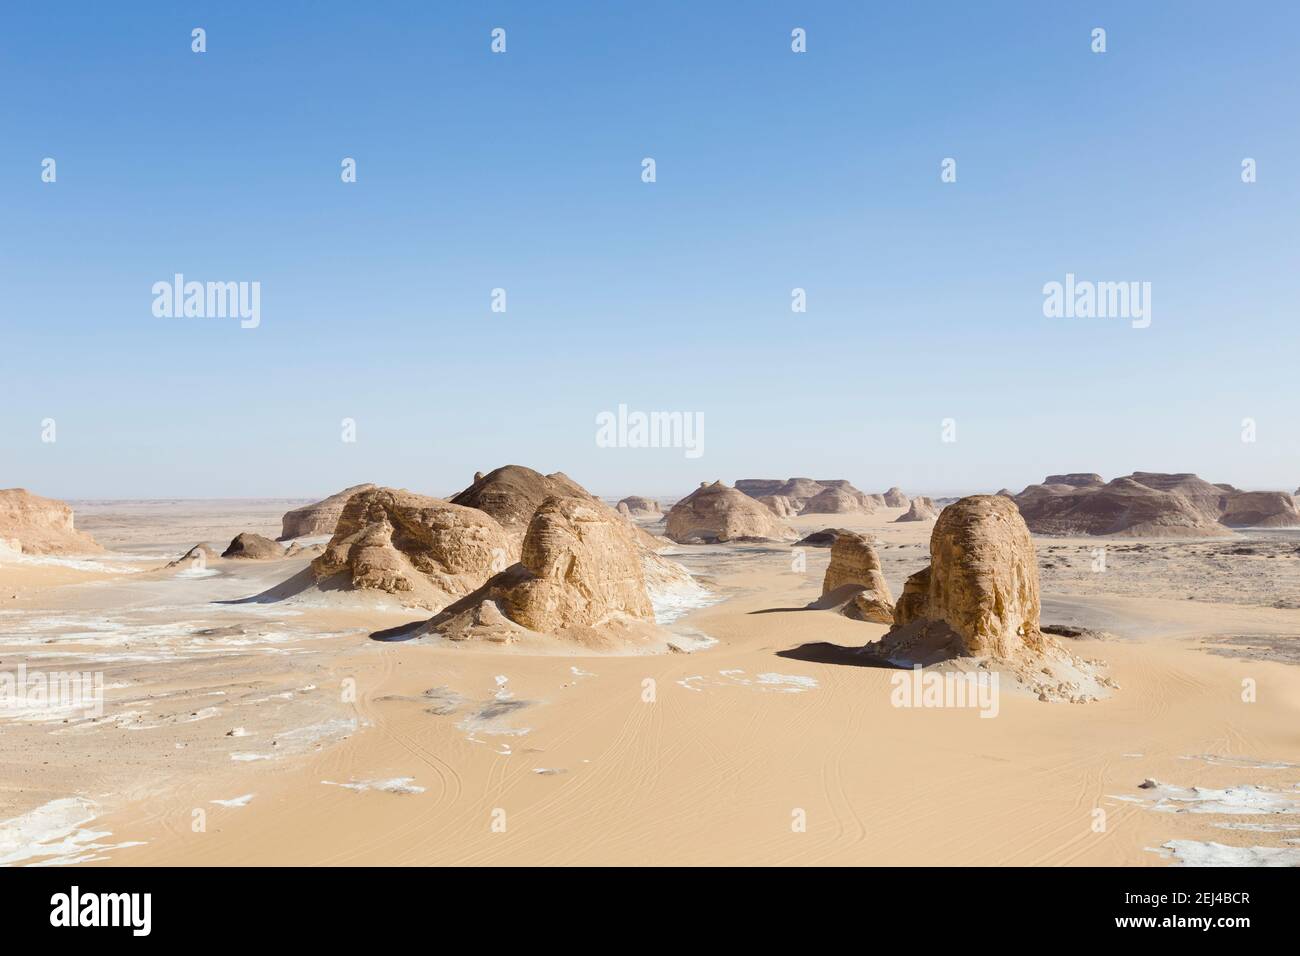 Vue sur le désert d'Aqabat, une partie du désert de la Libye occidentale, Égypte Banque D'Images